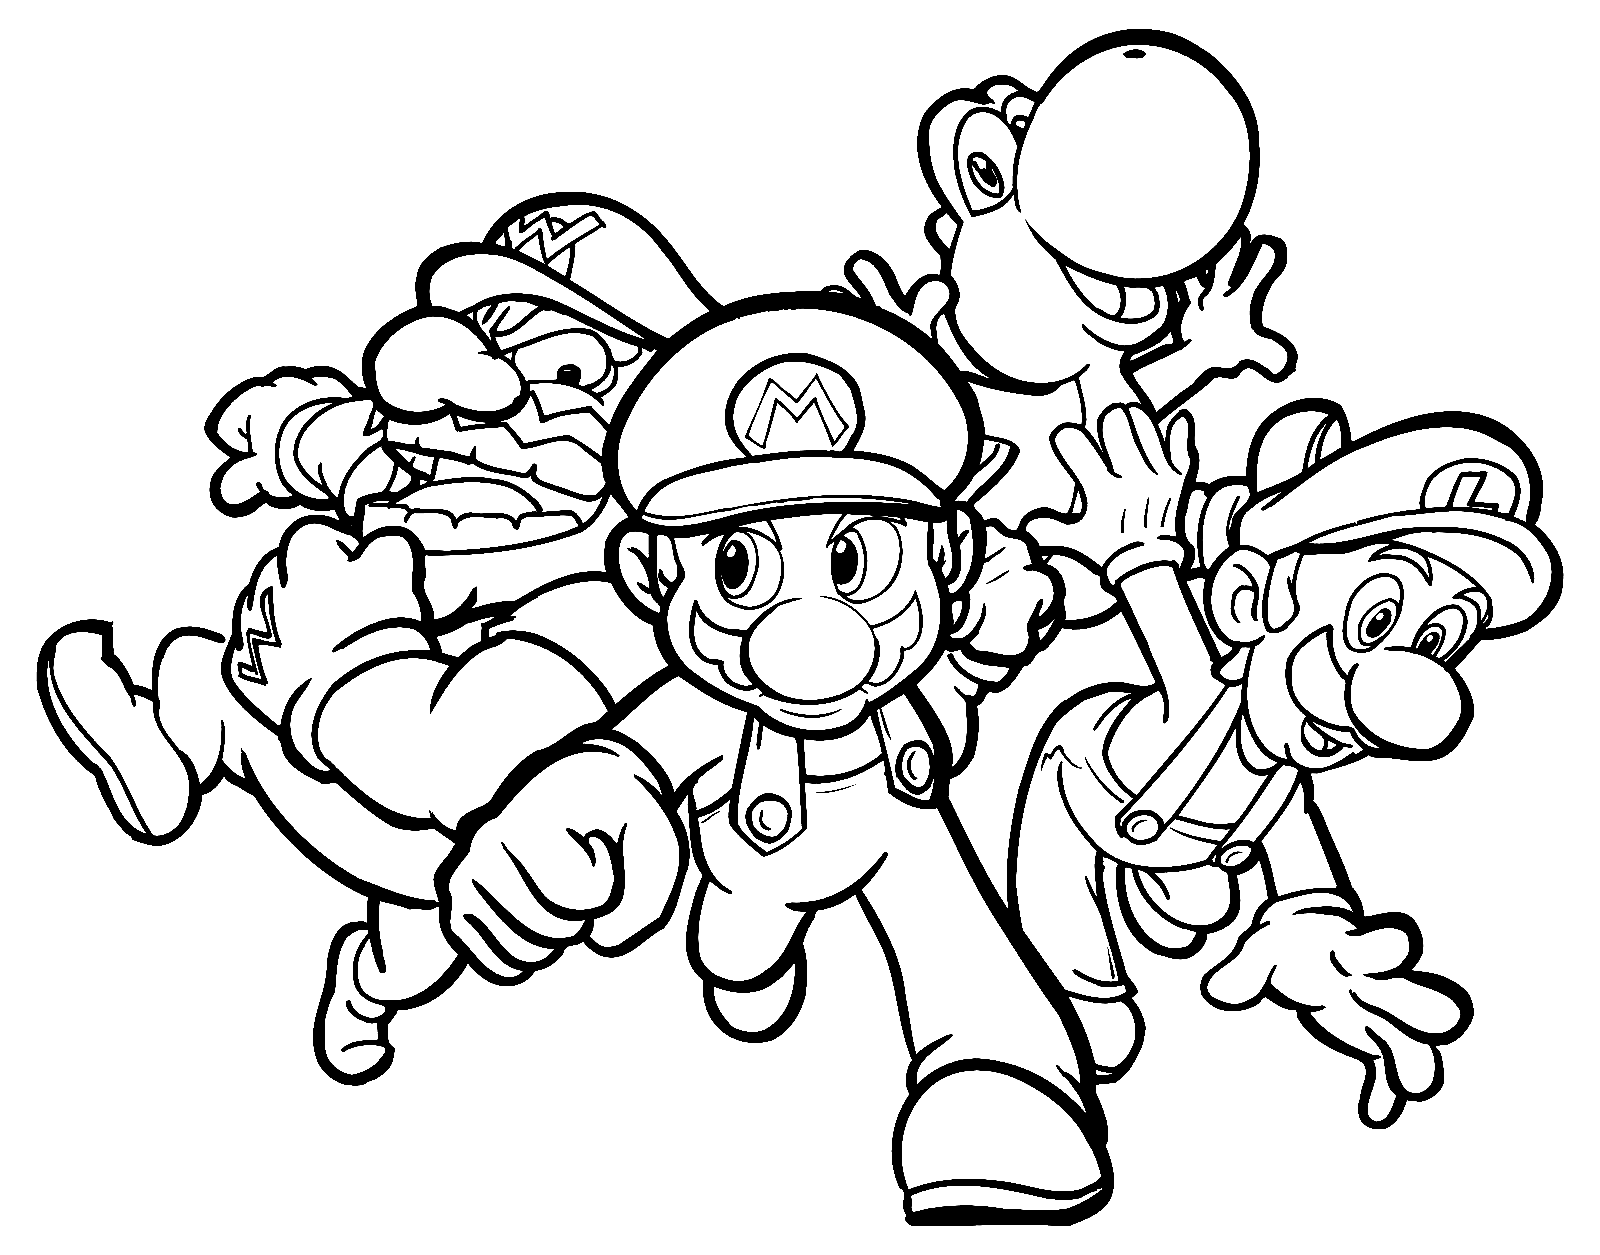 Team Mario Party from Mario